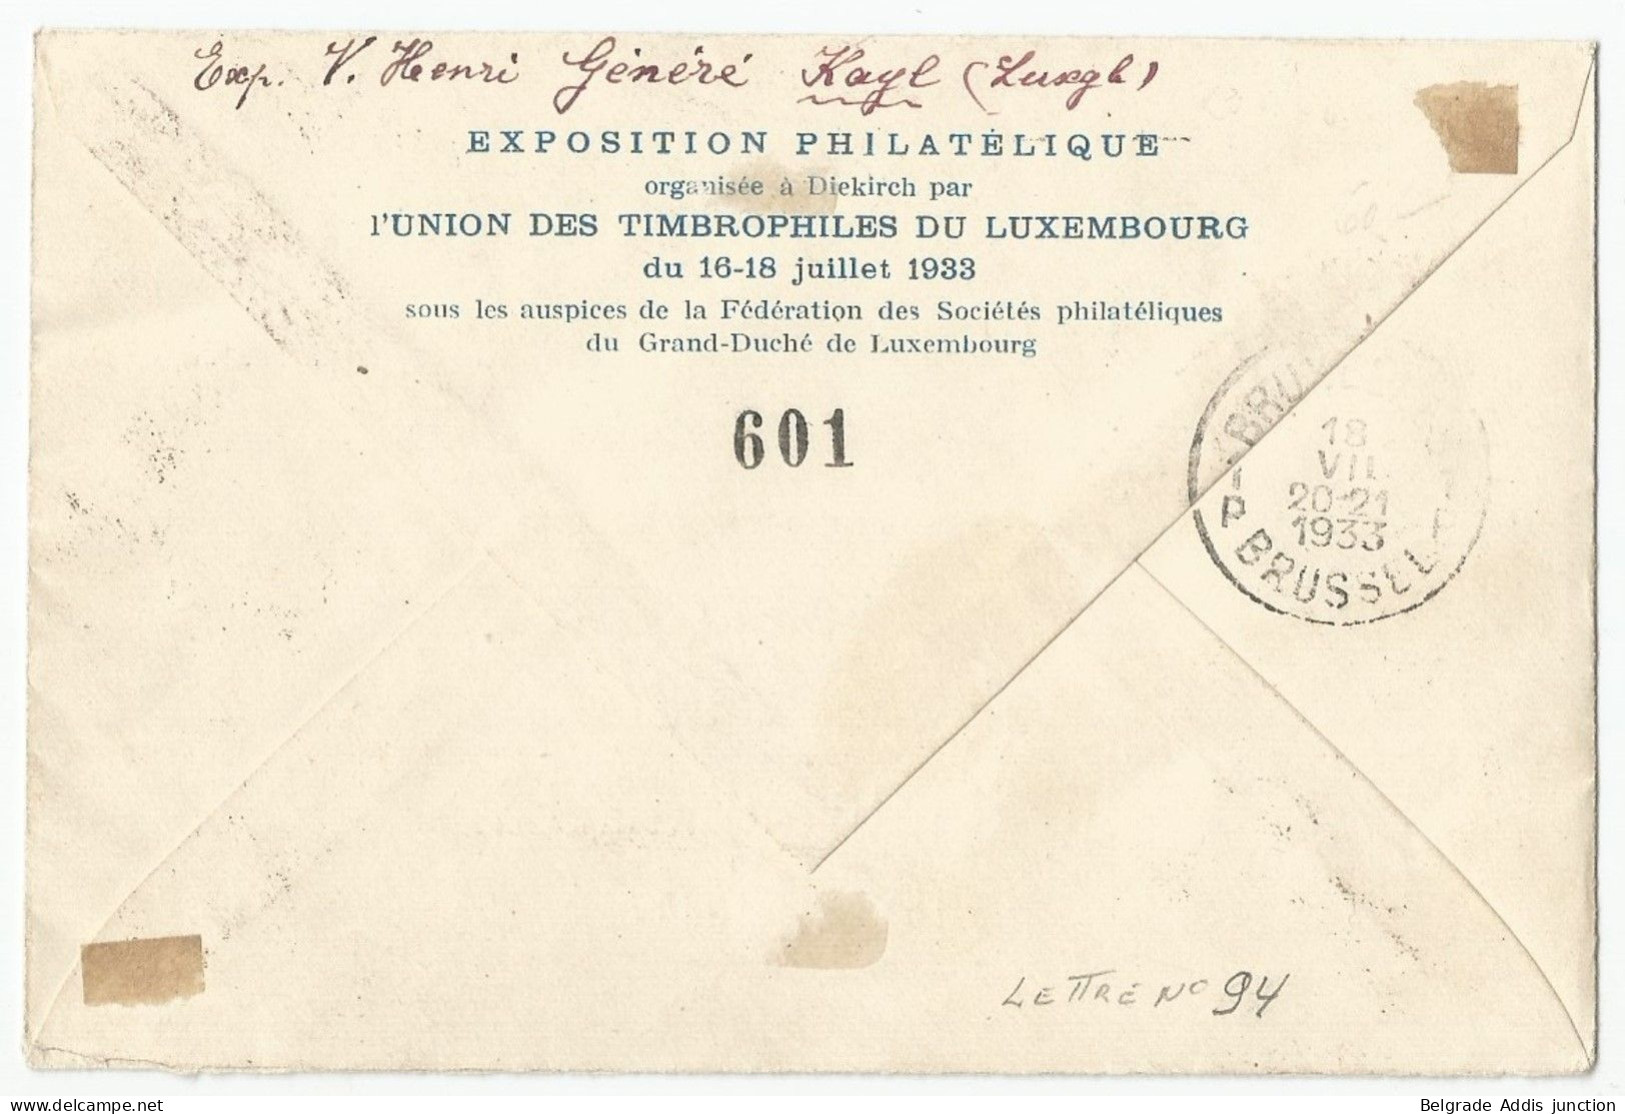 Luxembourg Luxemburg Belgique Belgium Airmail Cover 1933 Sabena - Brieven En Documenten